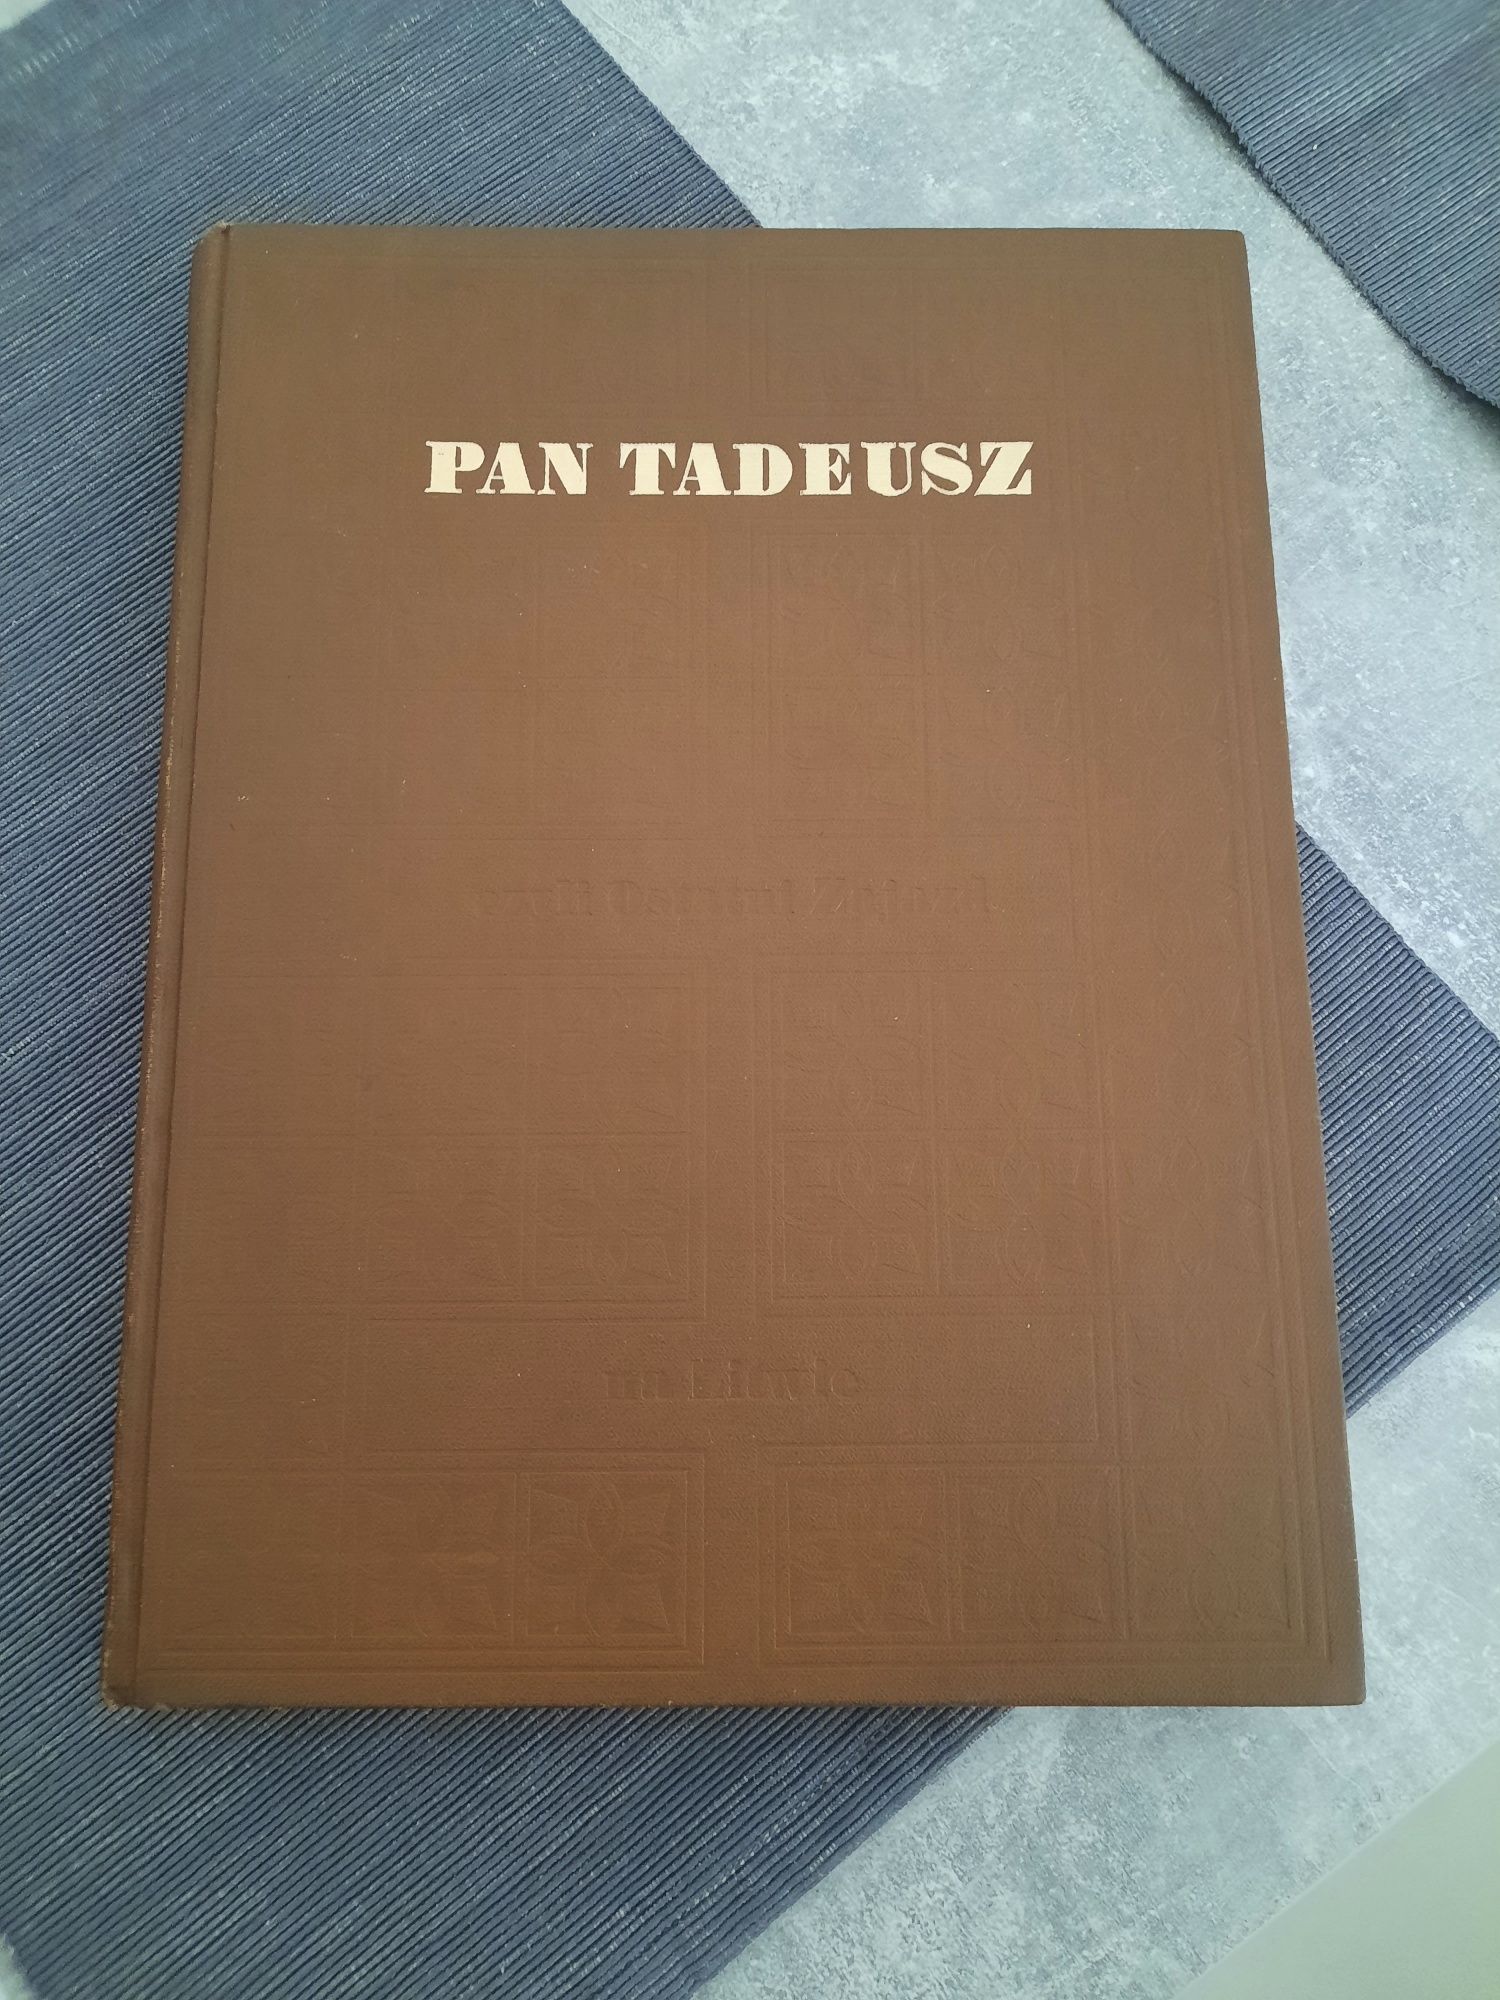 Pań Tadeusz .Wydawnictwo 1982 Książka i Wiedza